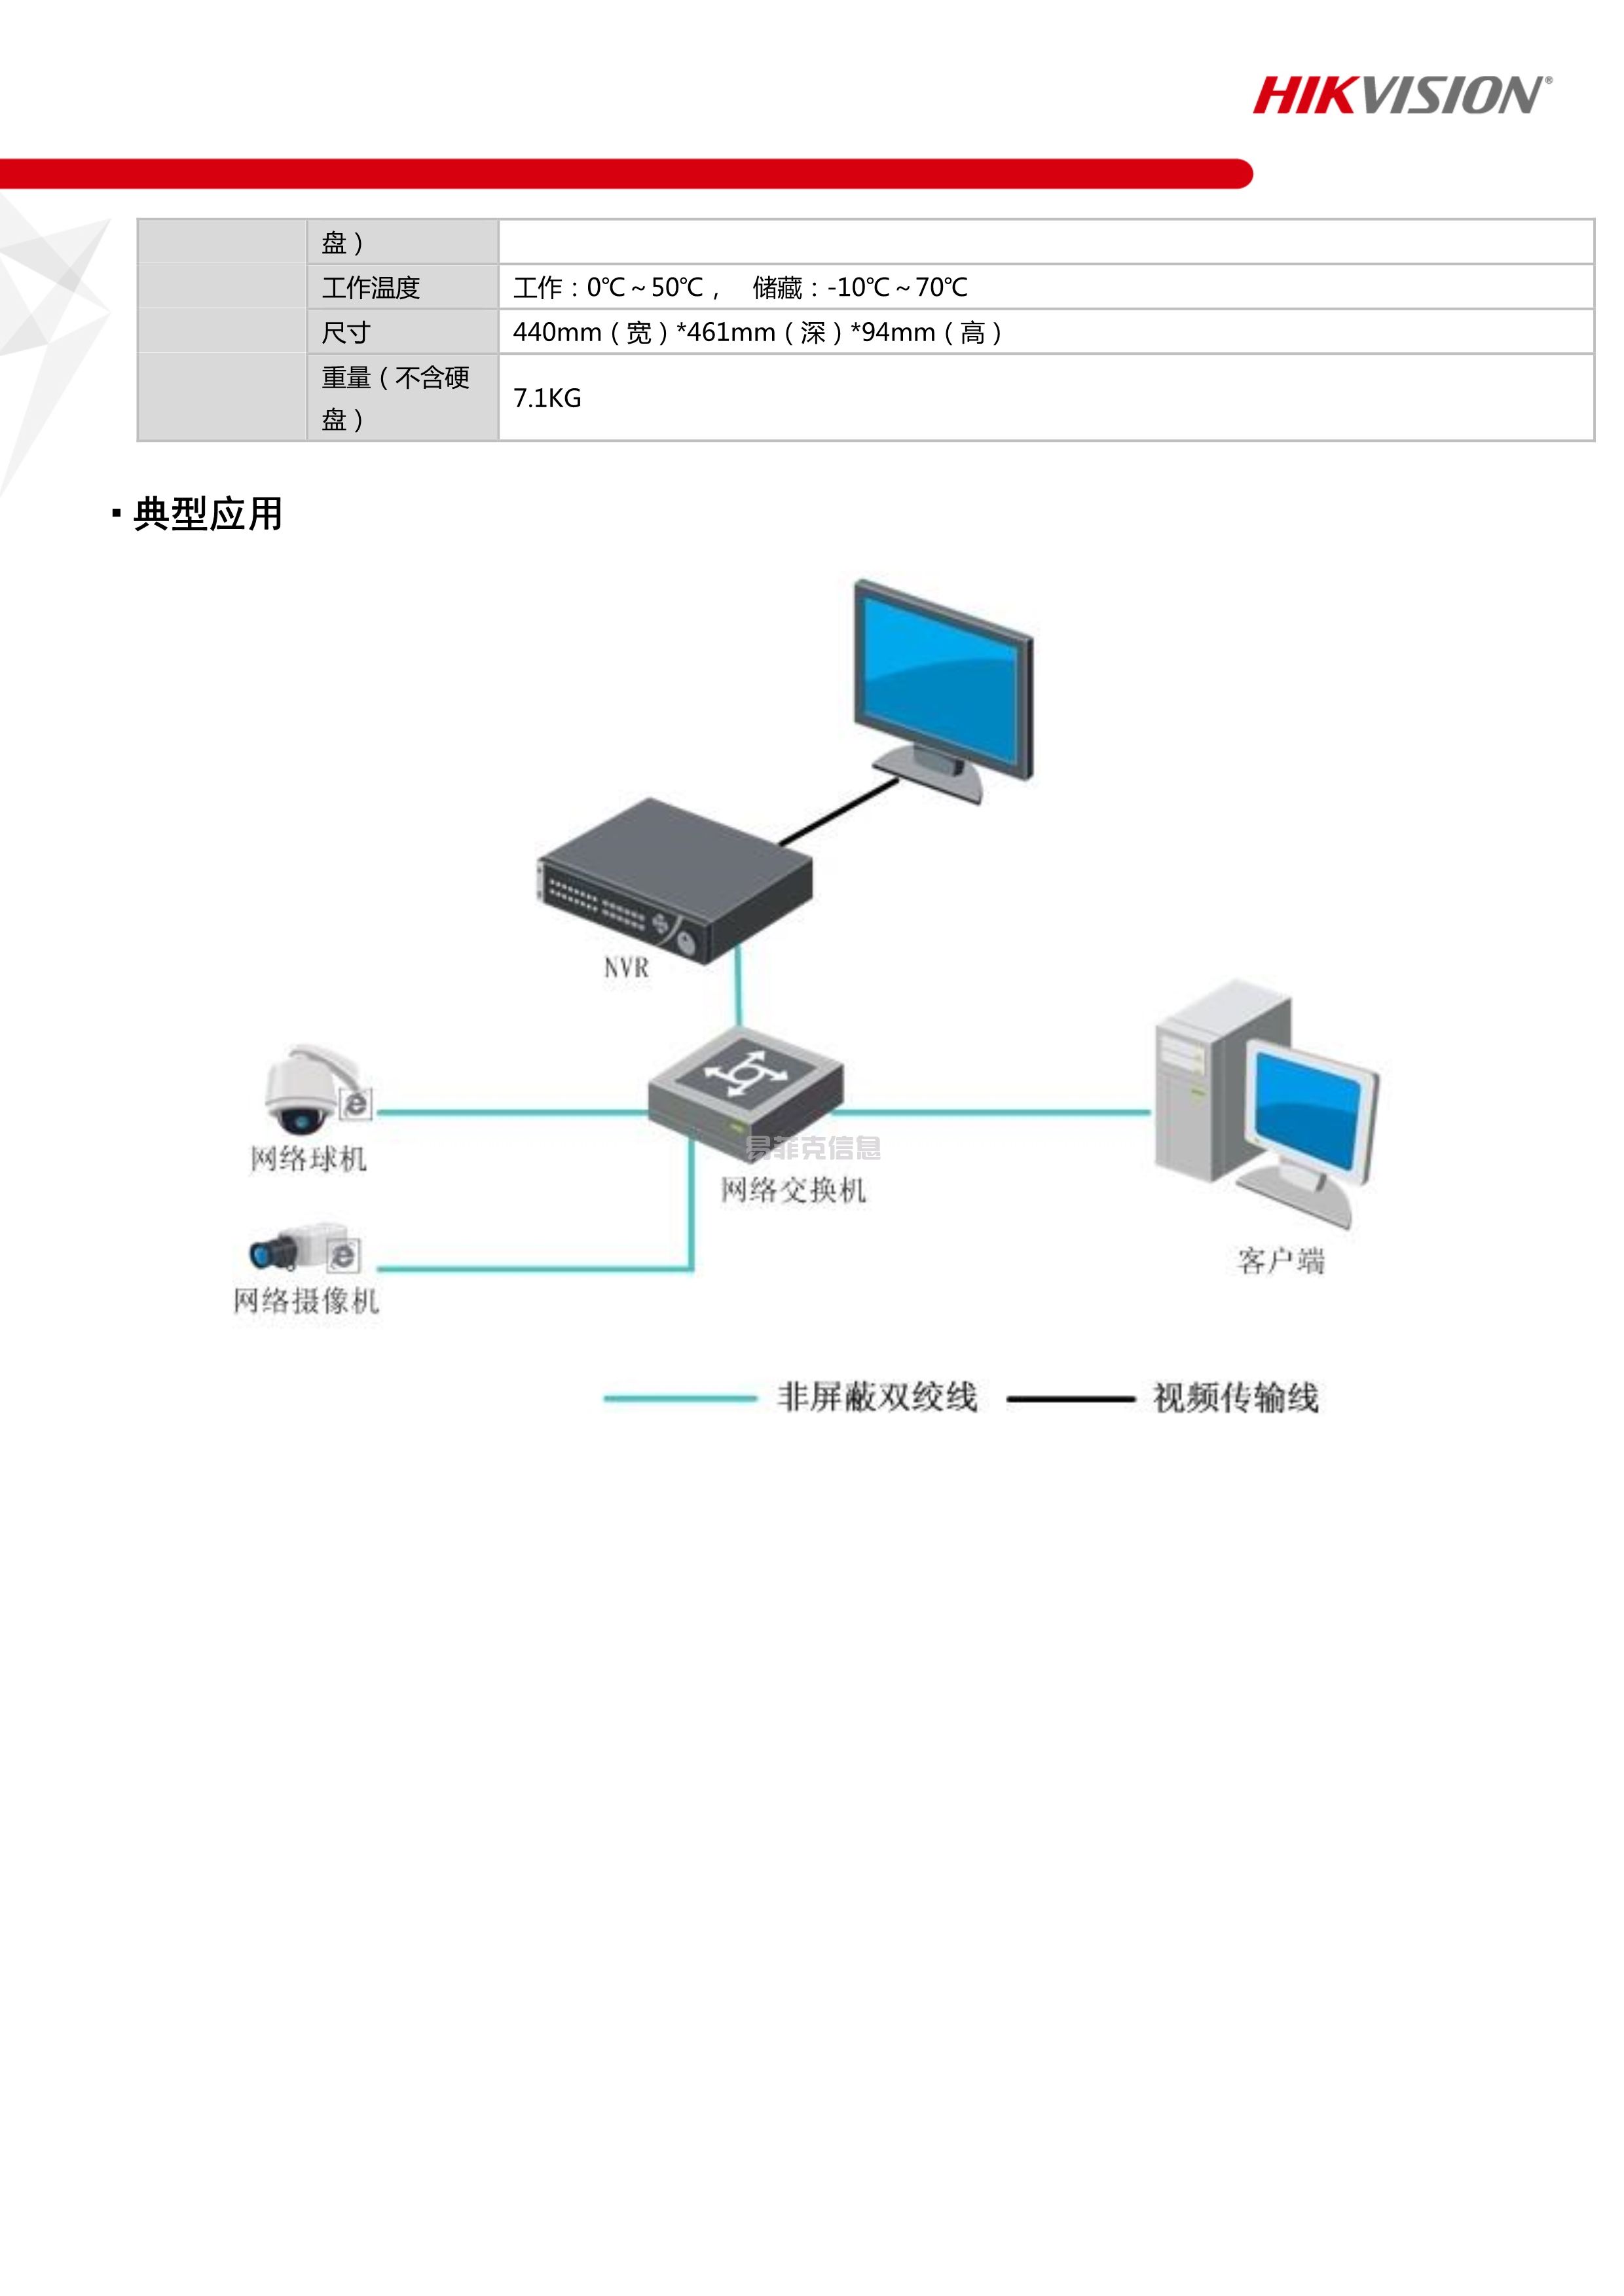 硬盘录像机(NVR)/DS-8832N-R8/4K(图3)